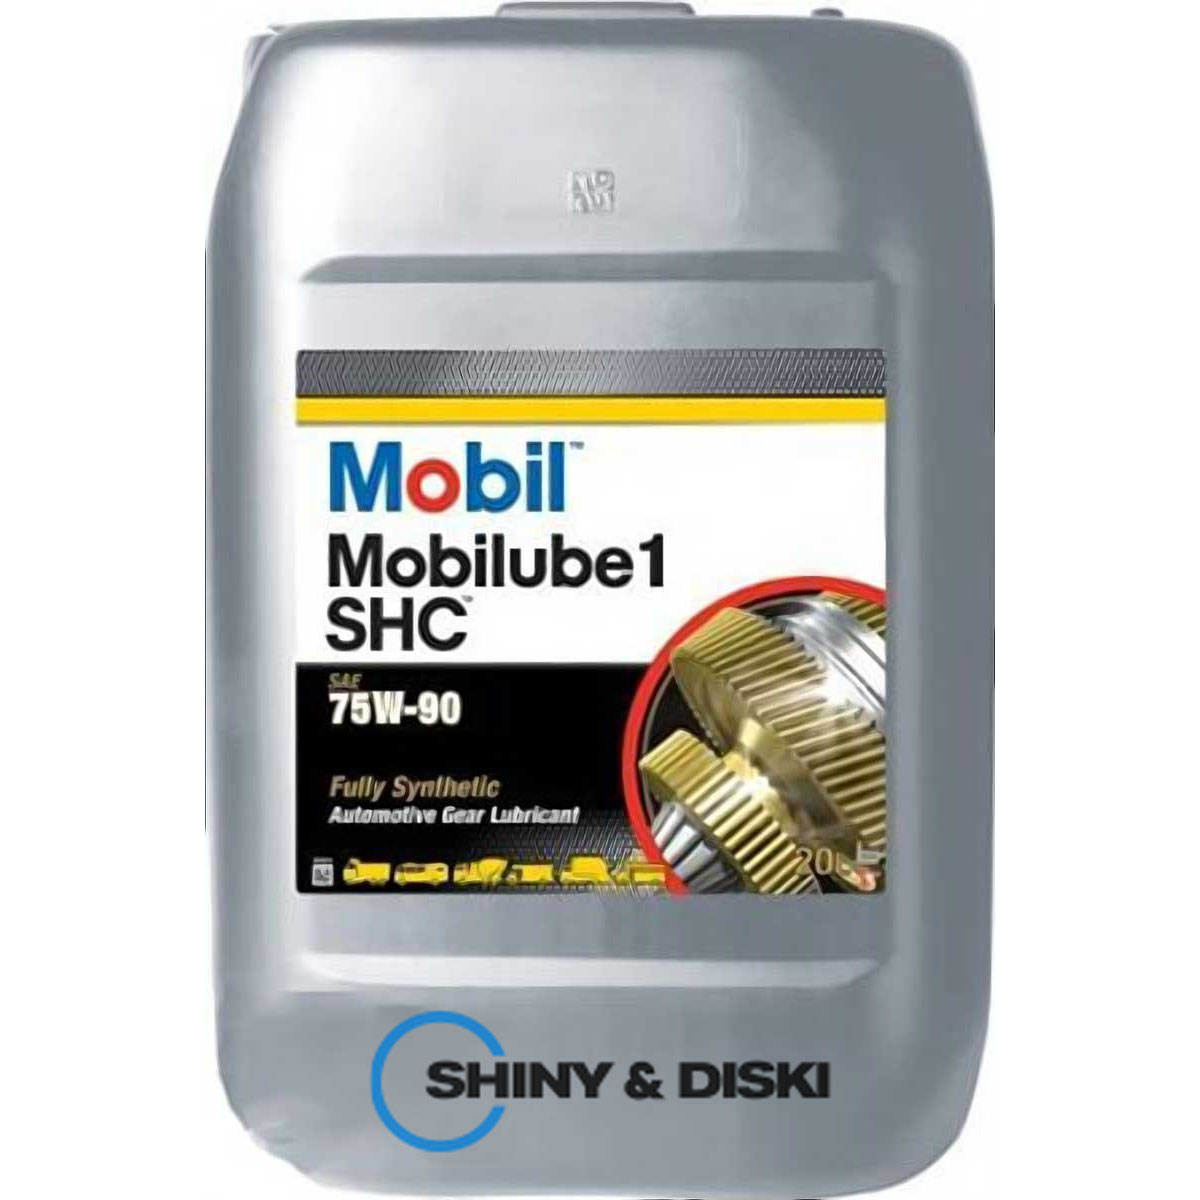 mobil mobilube 1 shc 75w-90 (20л)